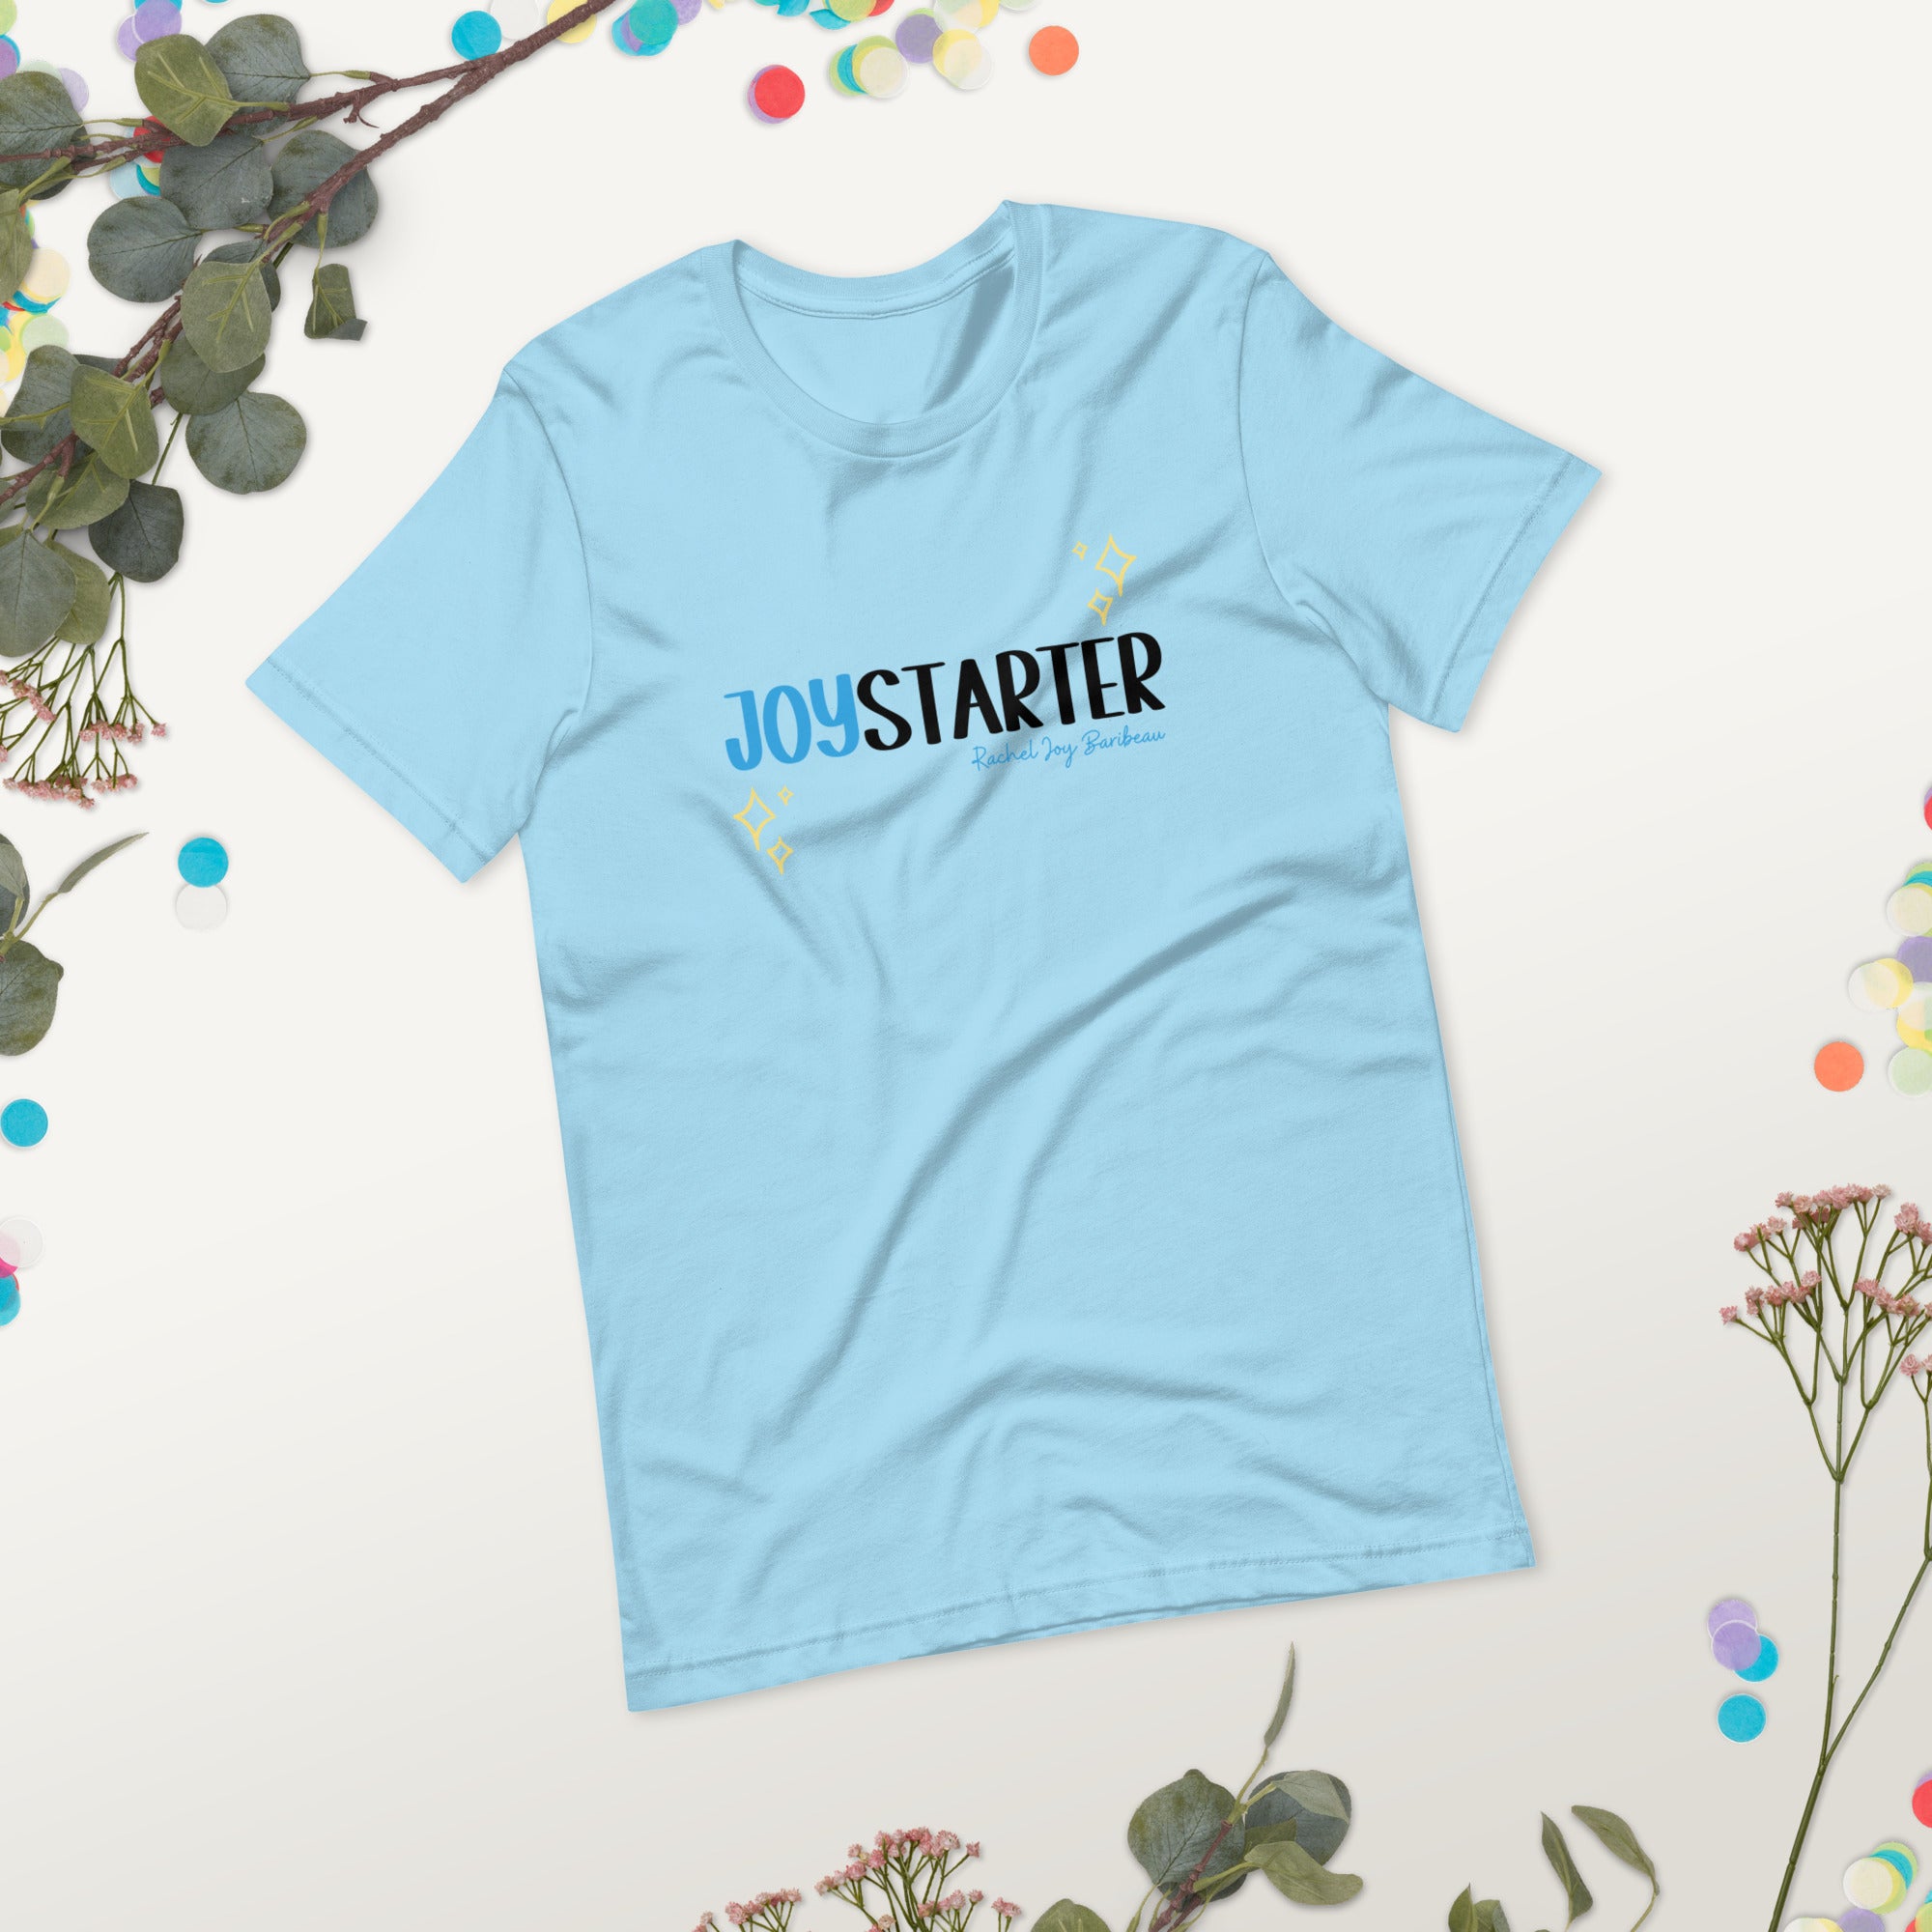 Be a Joy Starter - Unisex t-shirt